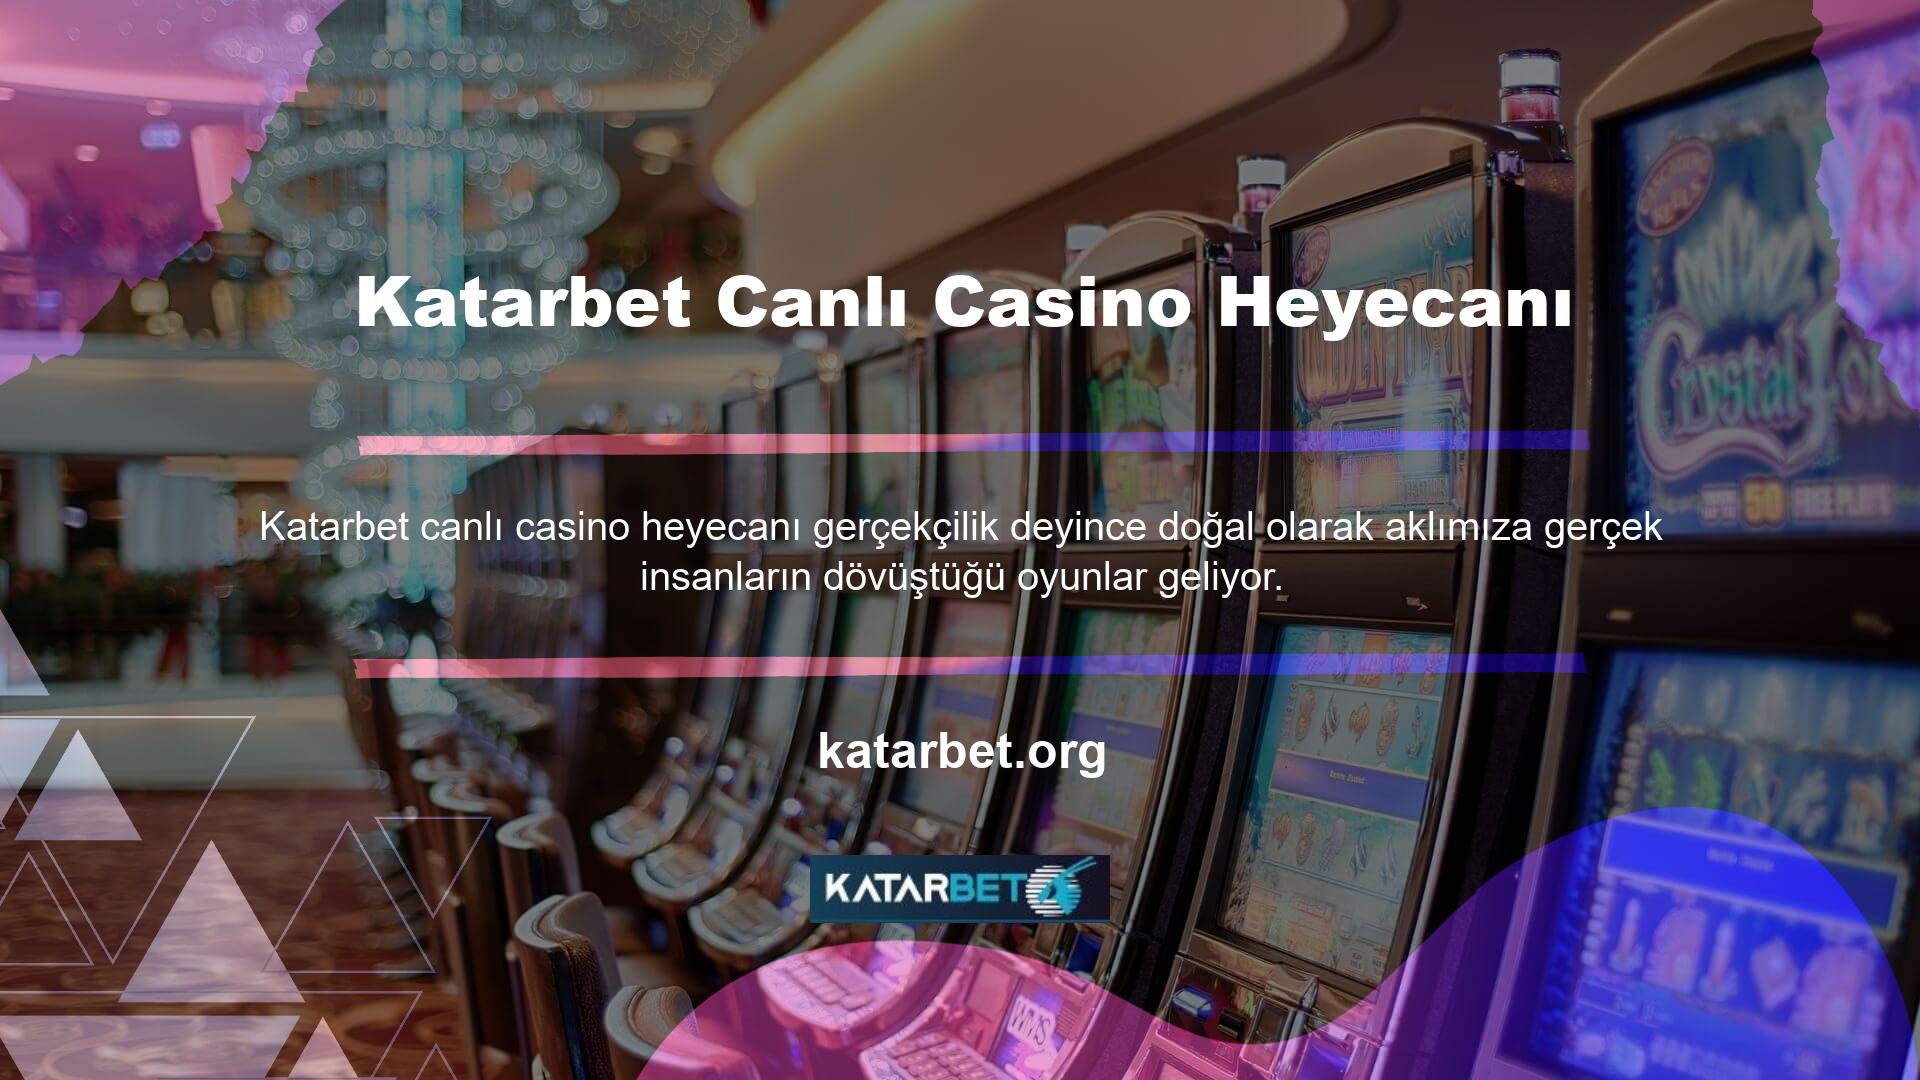 Kıbrıs casino siteleri en özgün Kıbrıs deneyimini sunmak istiyorsa canlı casino seçeneklerine özellikle dikkat etmelidir